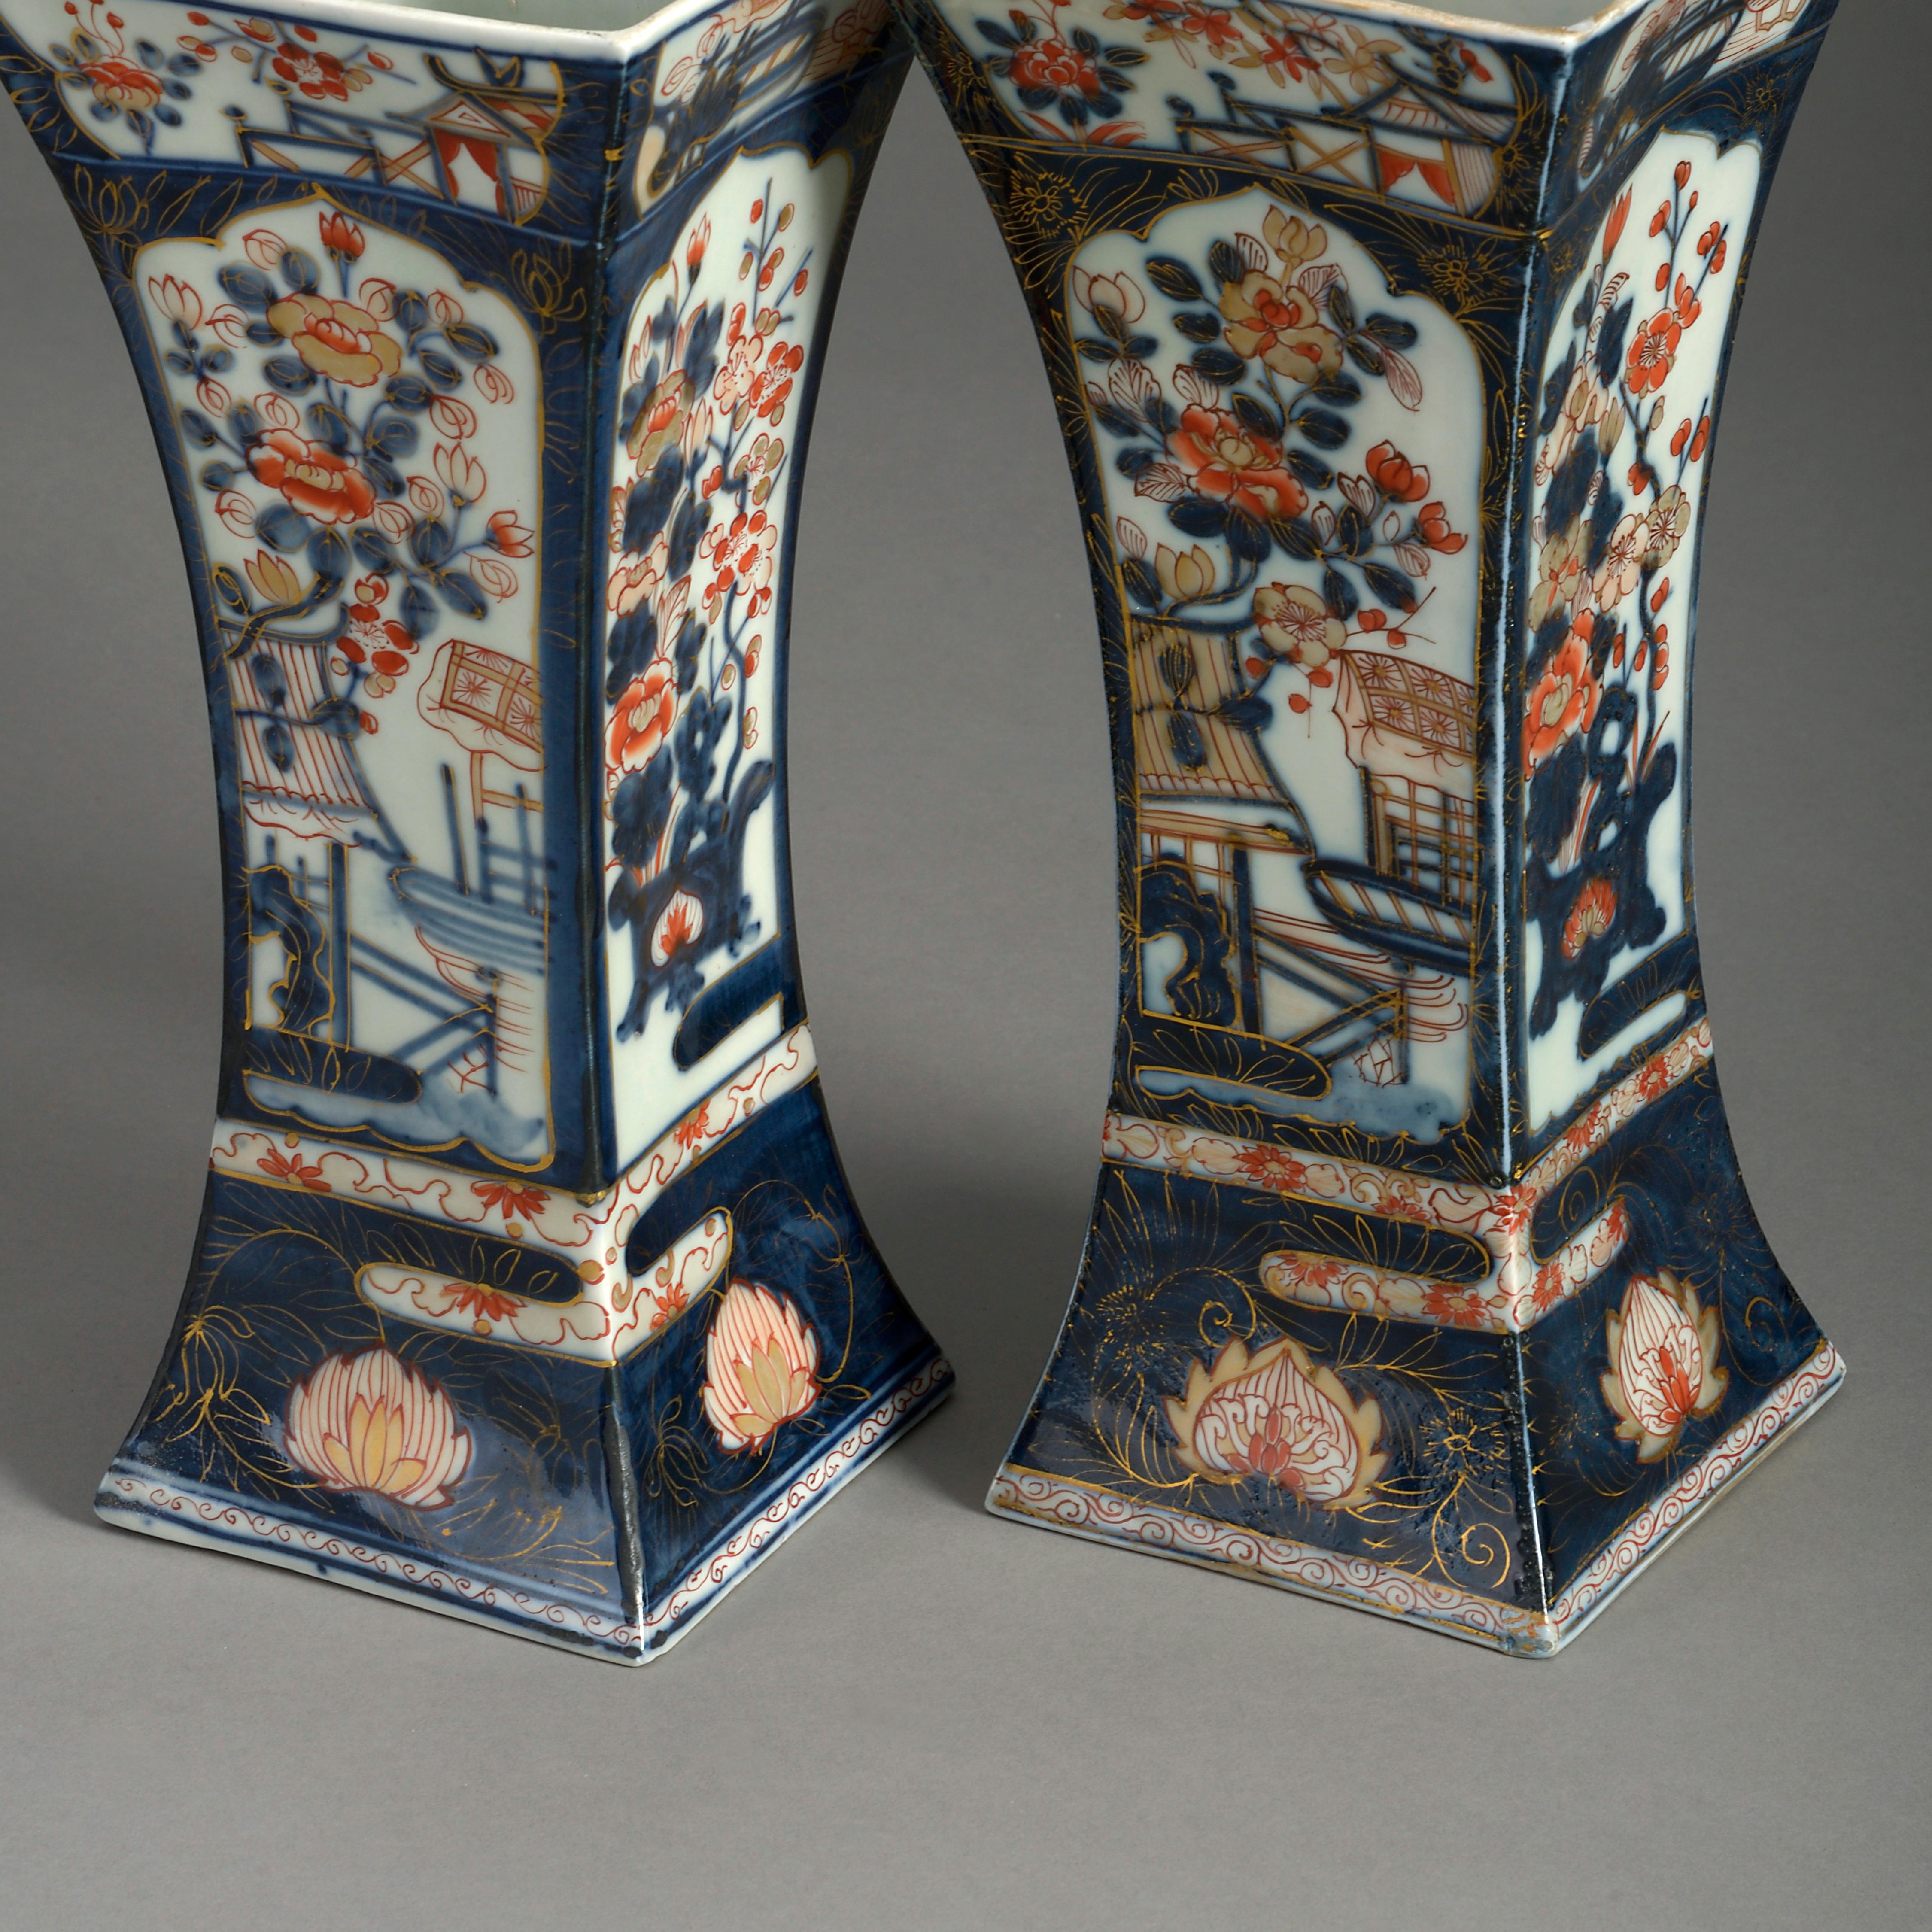 Fired Three 19th Century Samson Imari Porcelain Vases For Sale